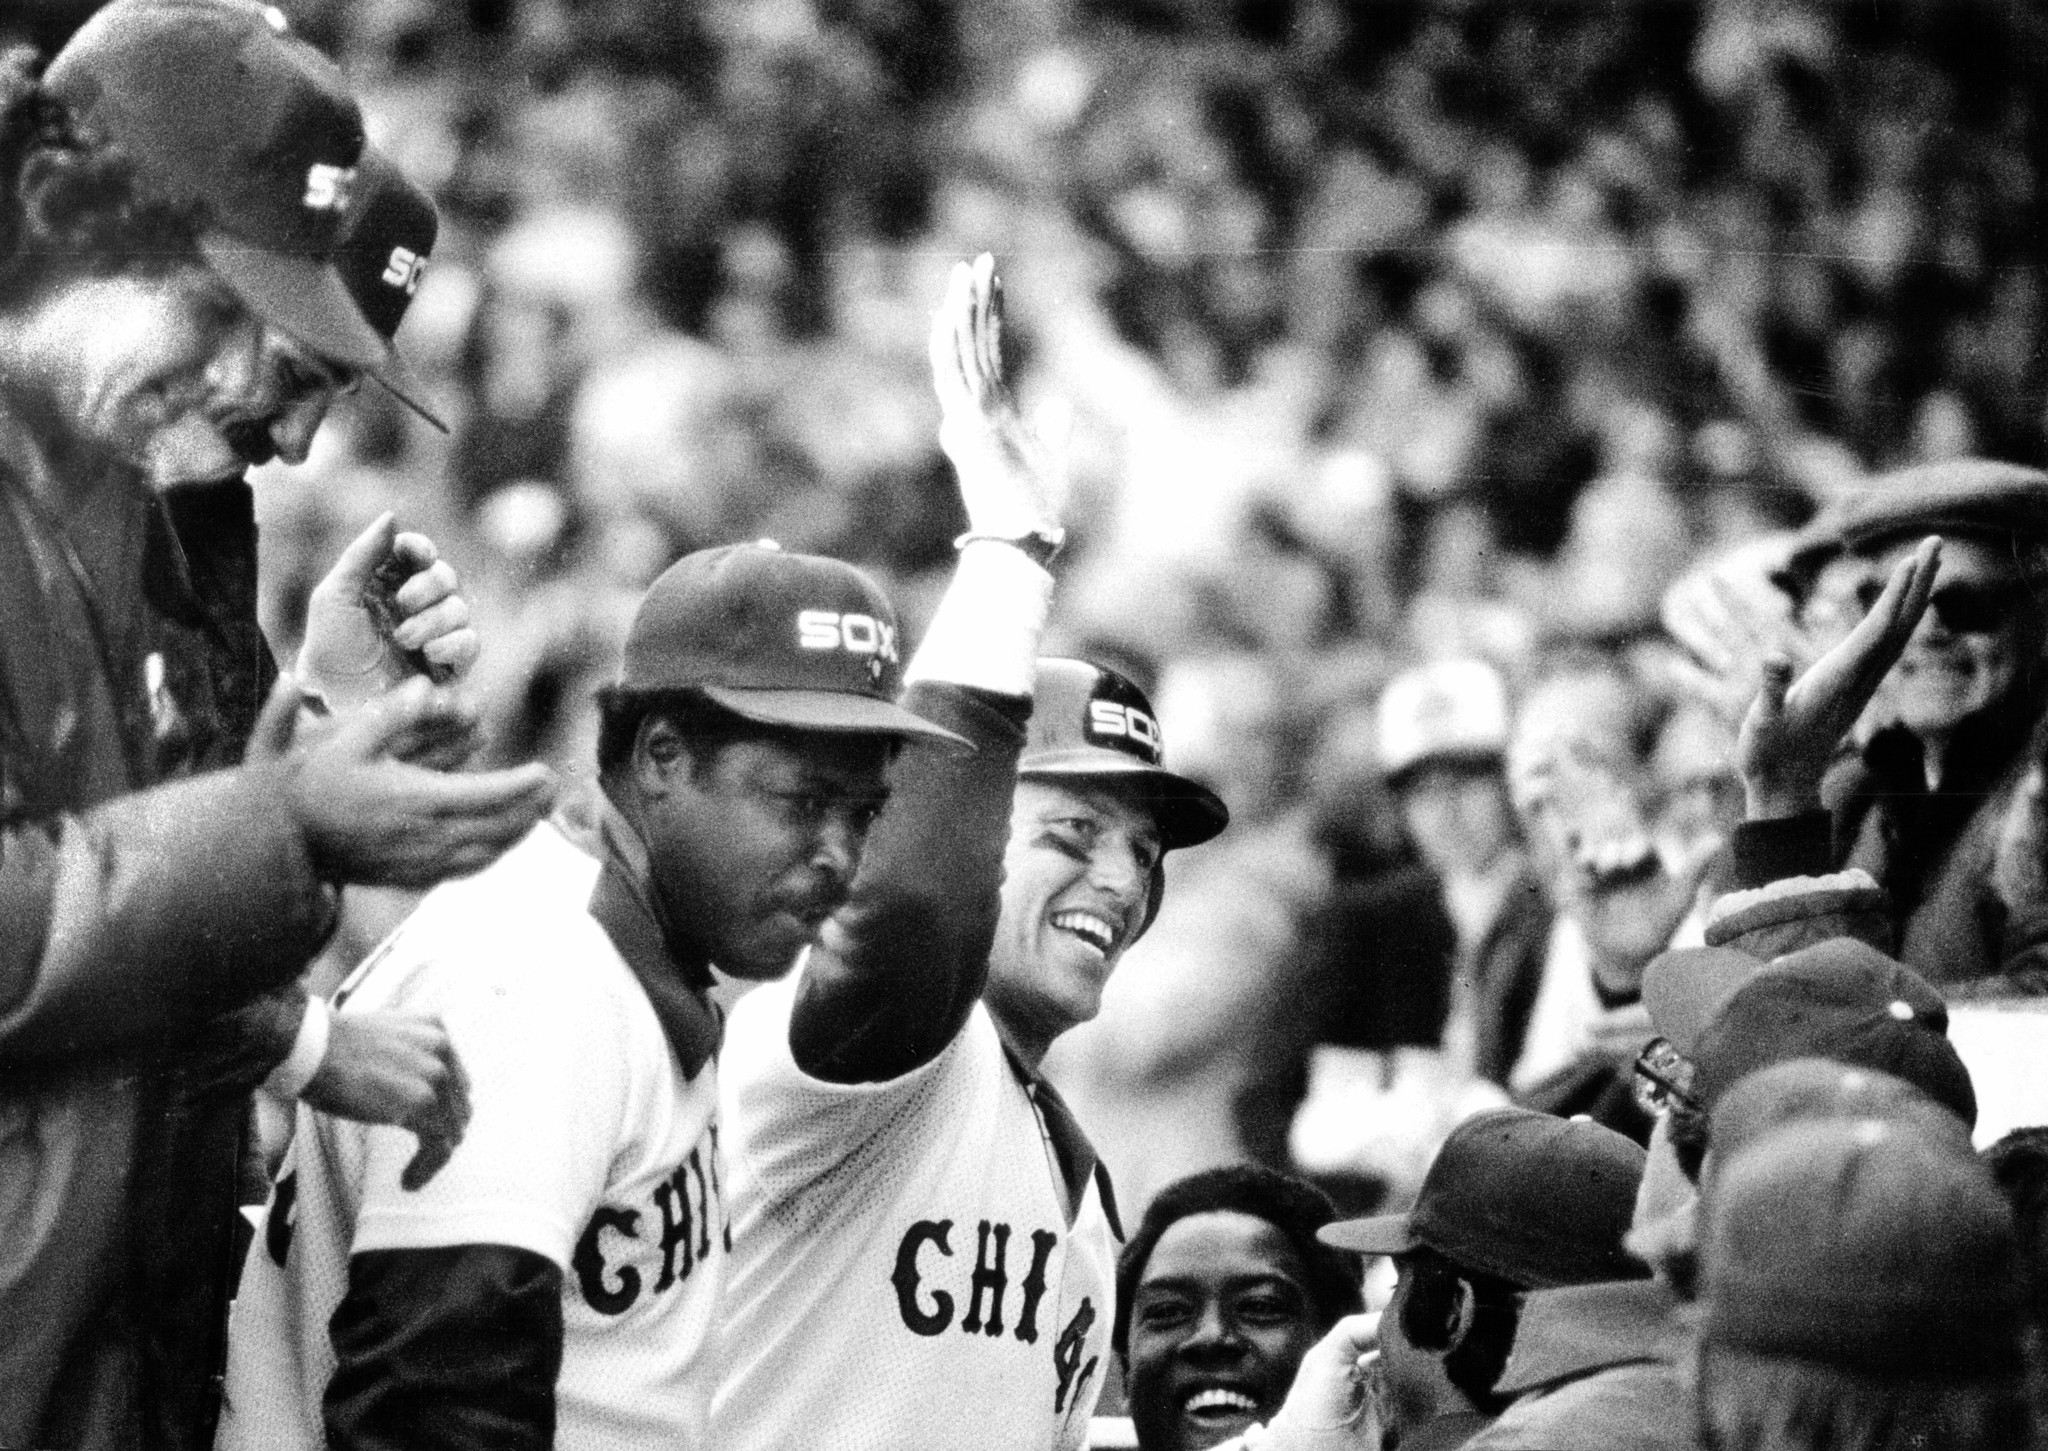 April 14, 1981: Grand slam for new White Sox catcher Carlton Fisk